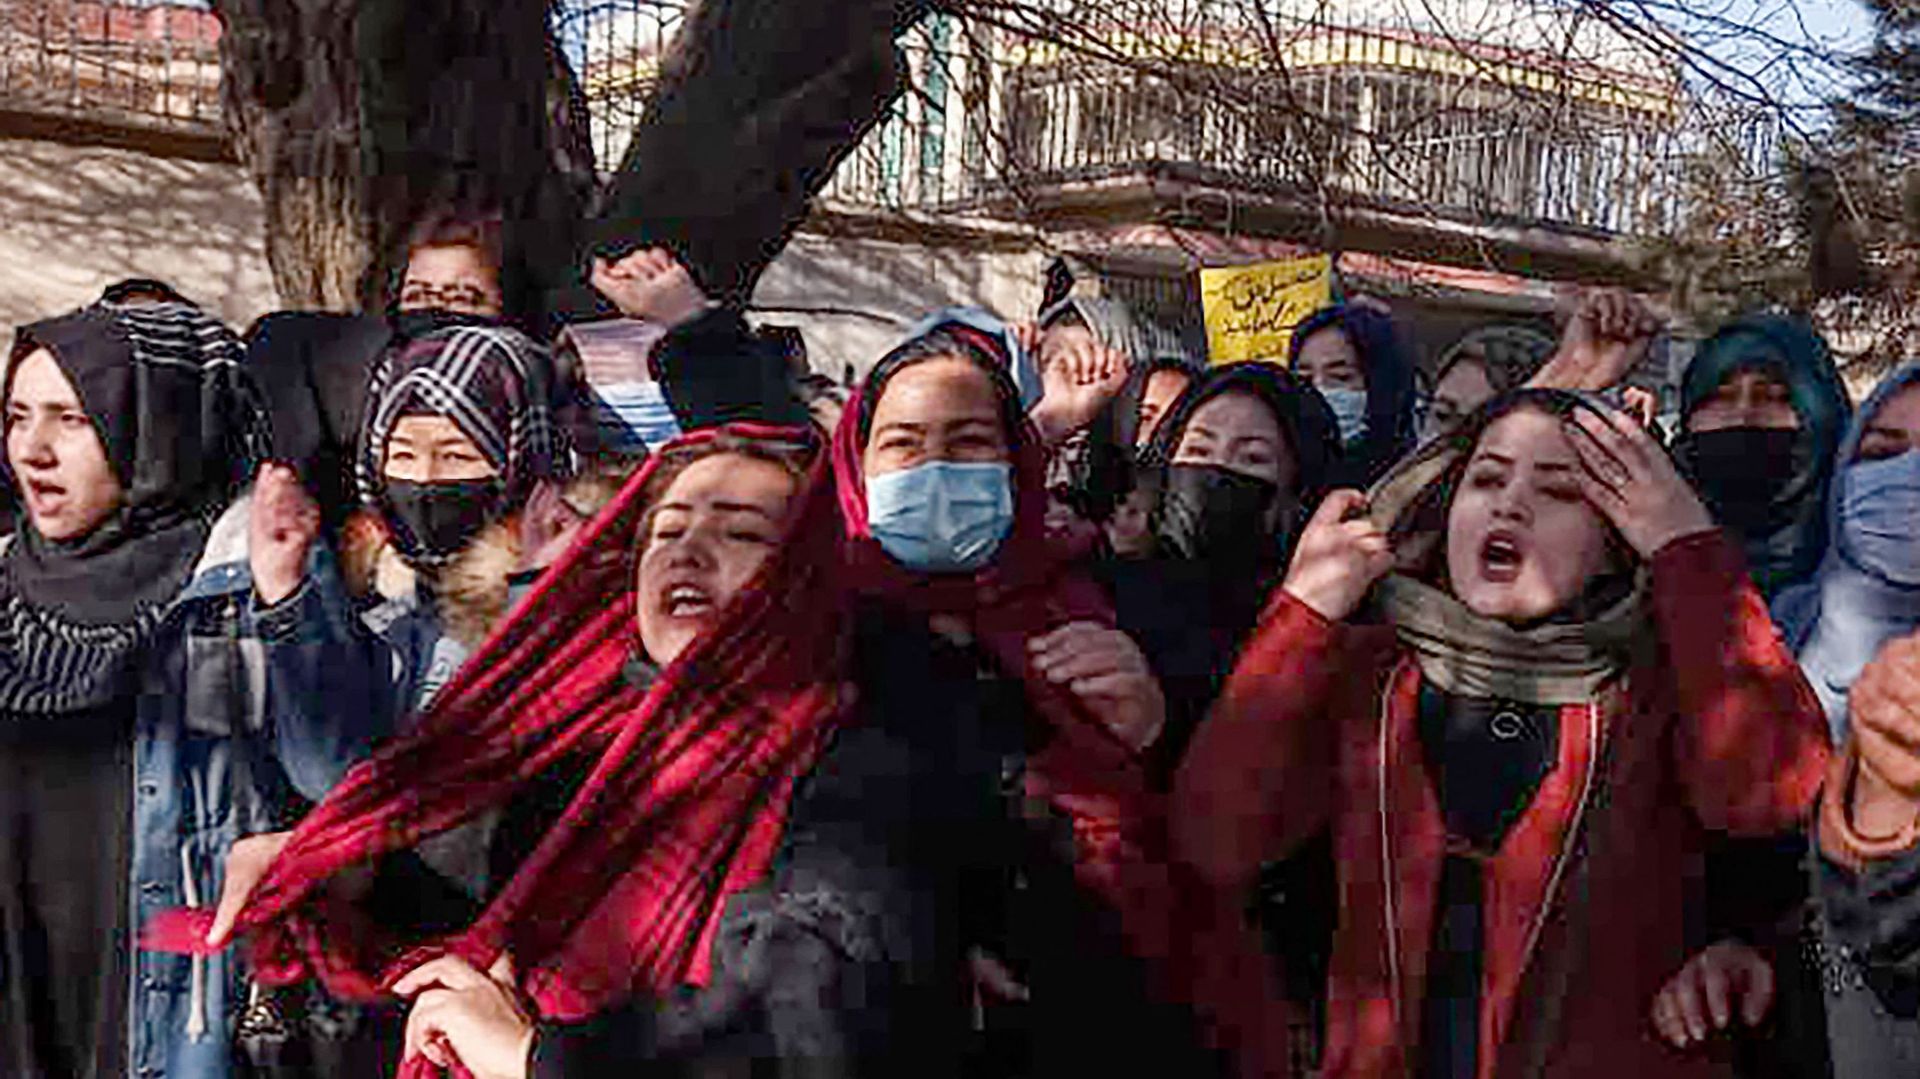 Image d'illustration : Des femmes afghanes scandent des slogans pour protester contre l'interdiction de l'enseignement universitaire pour les femmes, à Kaboul, le 22 décembre 2022.